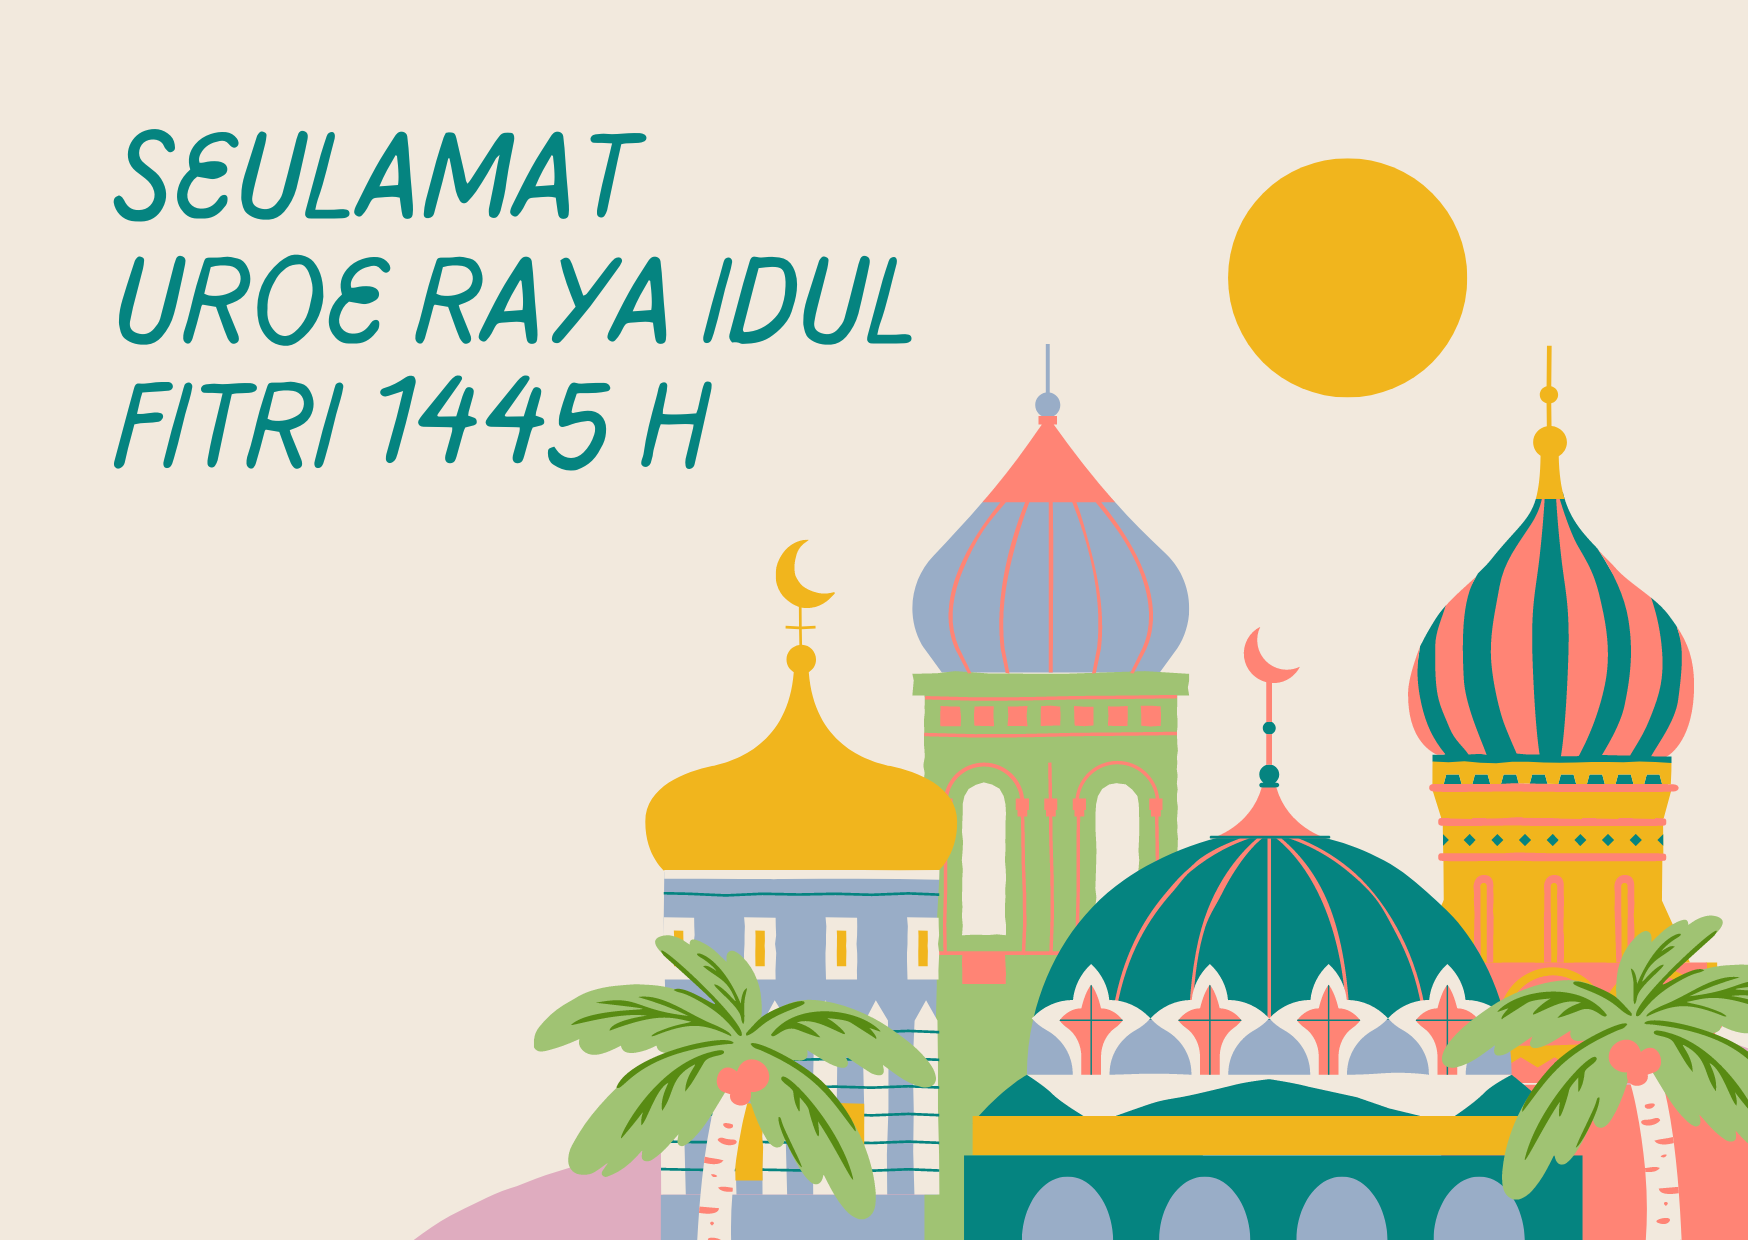 Ucapan 1 : Selamat Hari Raya Idul Fitri Bahasa Aceh Singkat